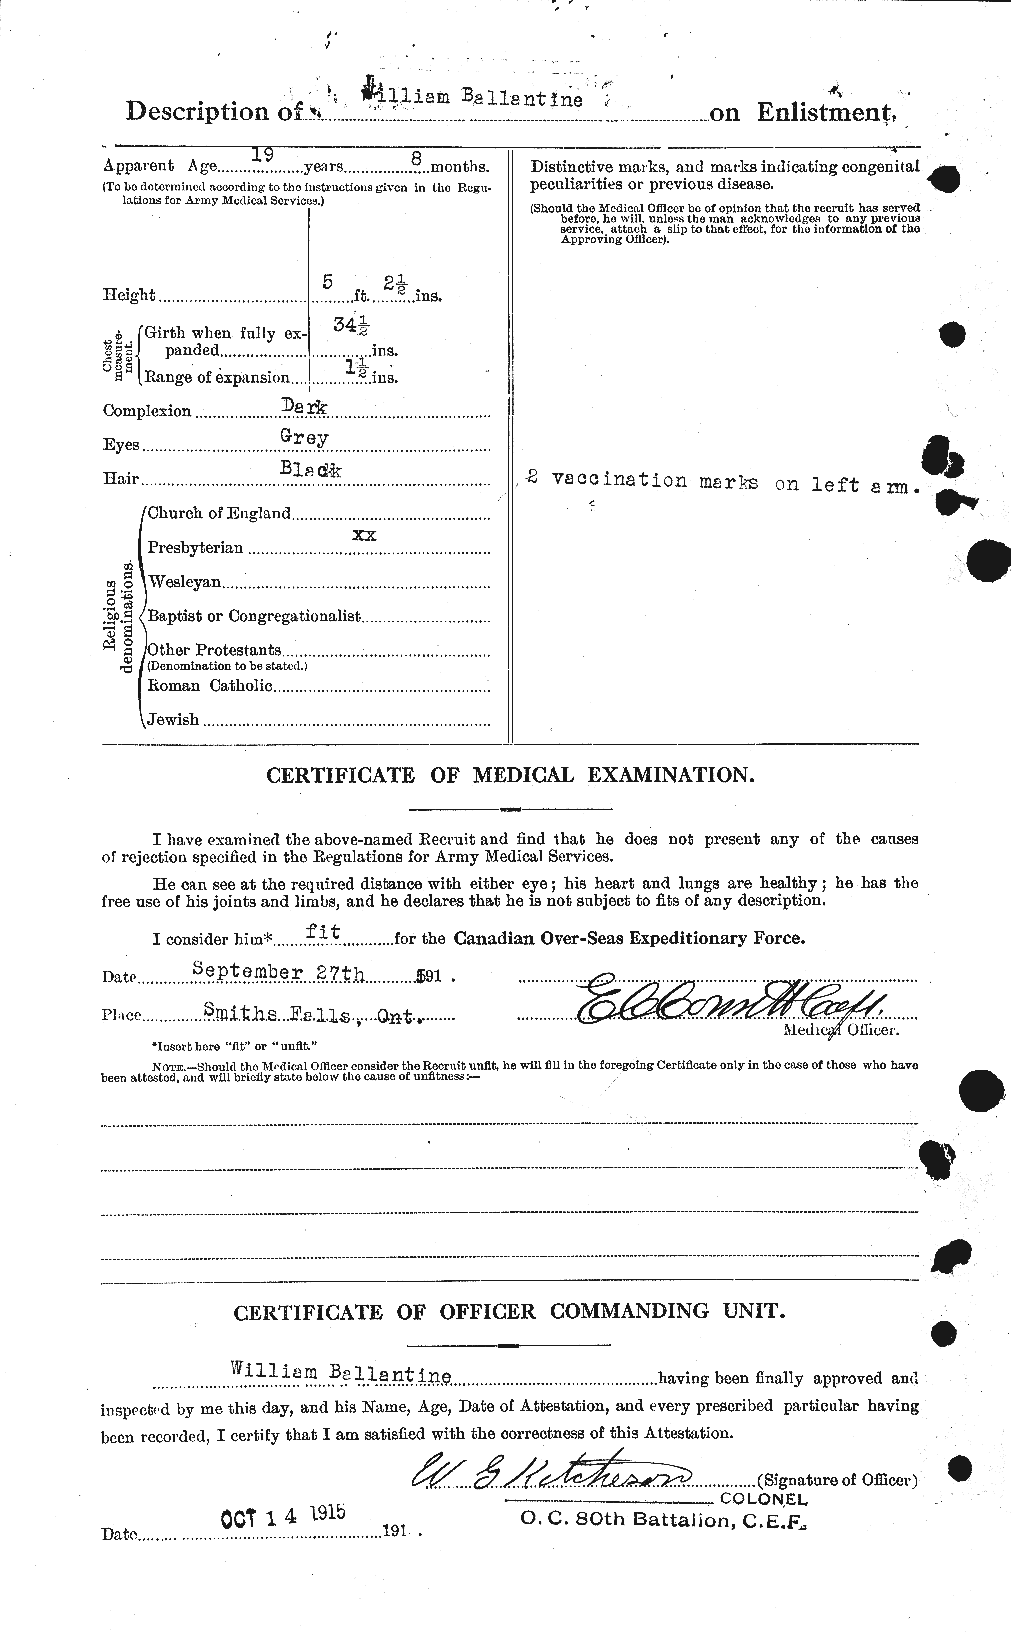 Dossiers du Personnel de la Première Guerre mondiale - CEC 219840b